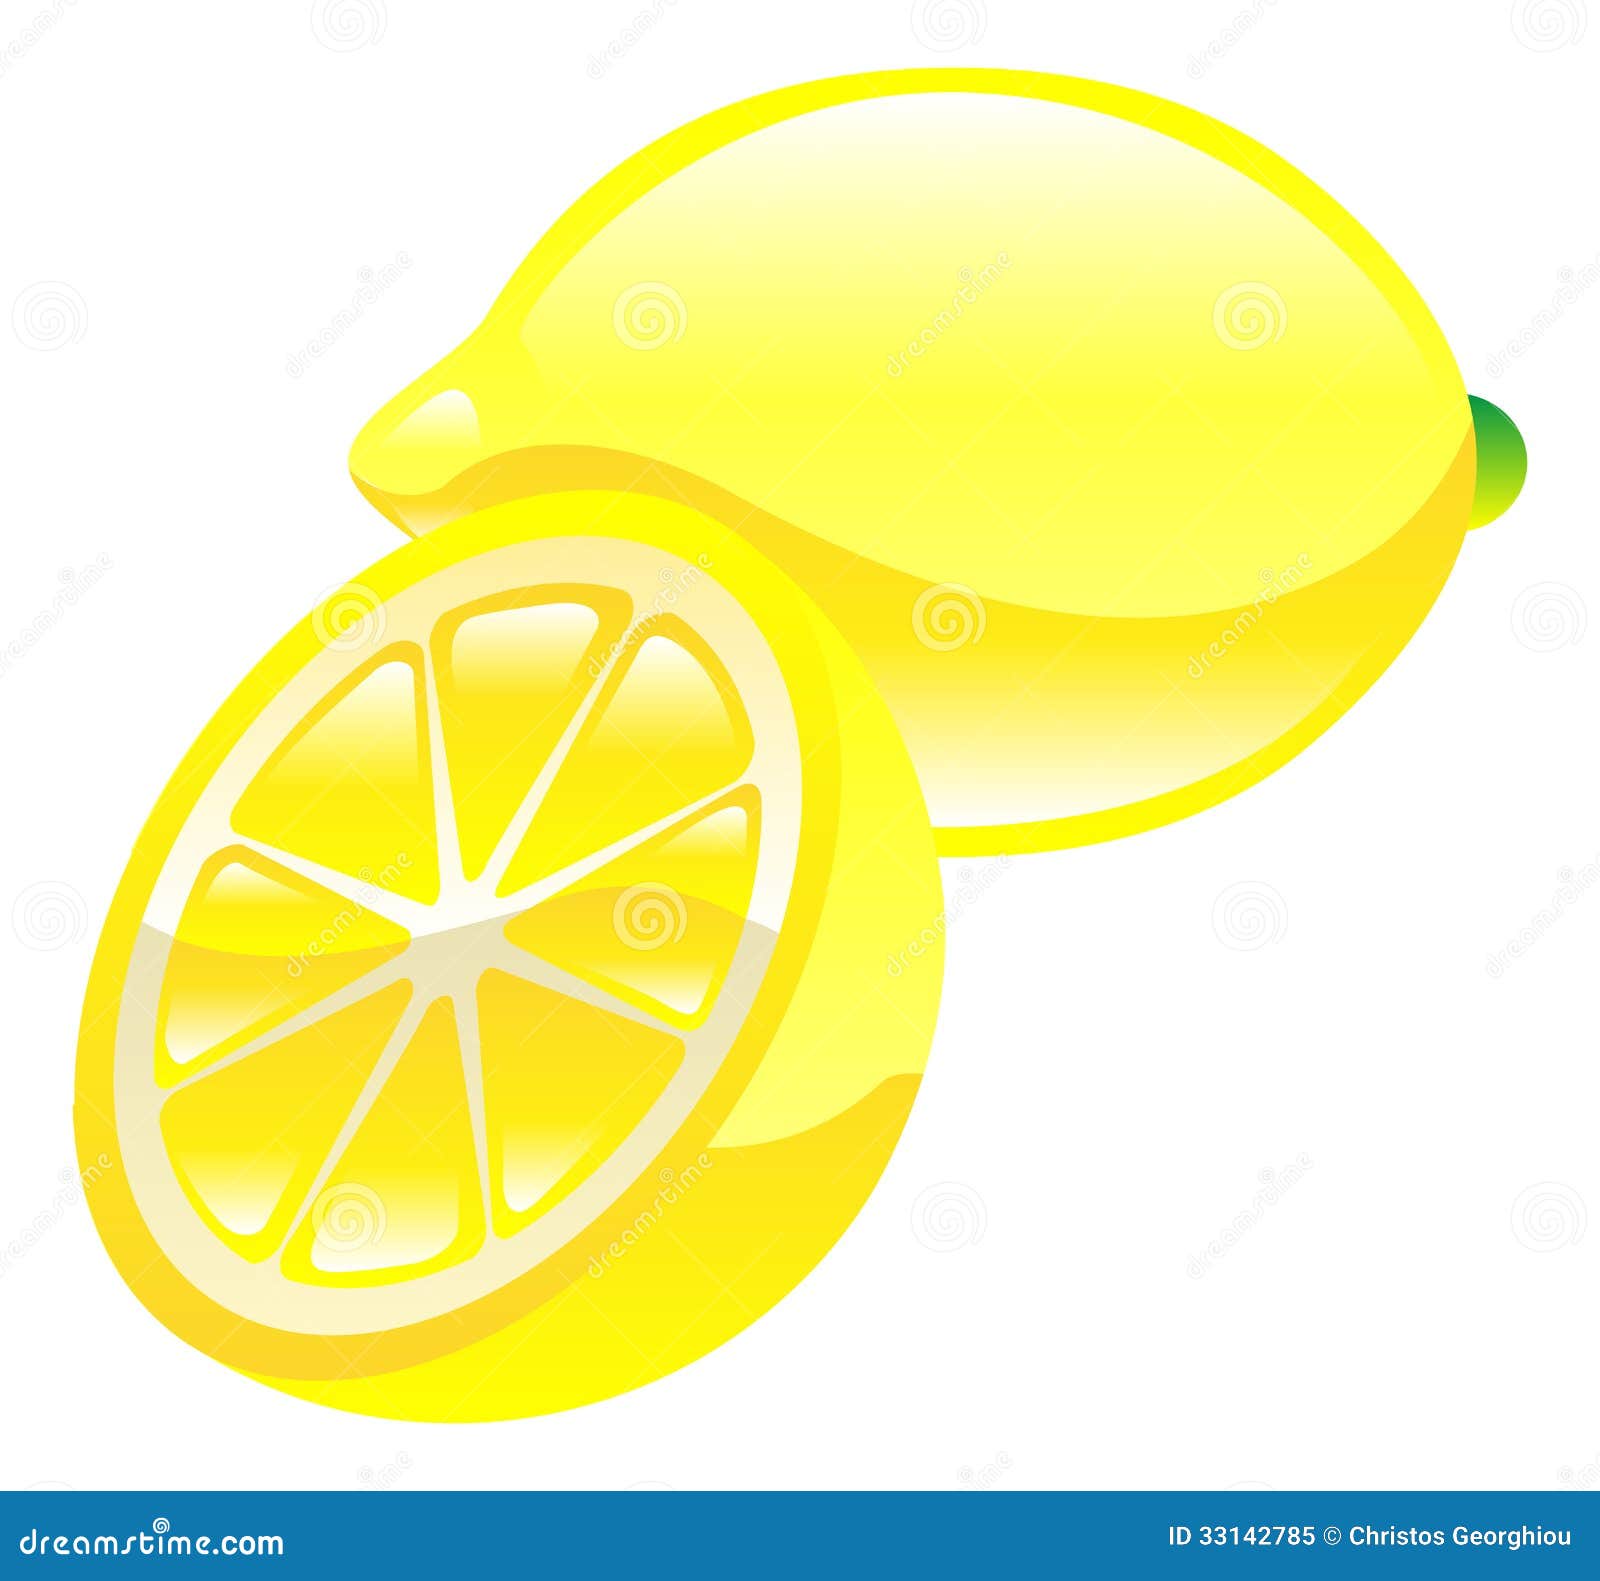 lemon juice clipart - photo #28